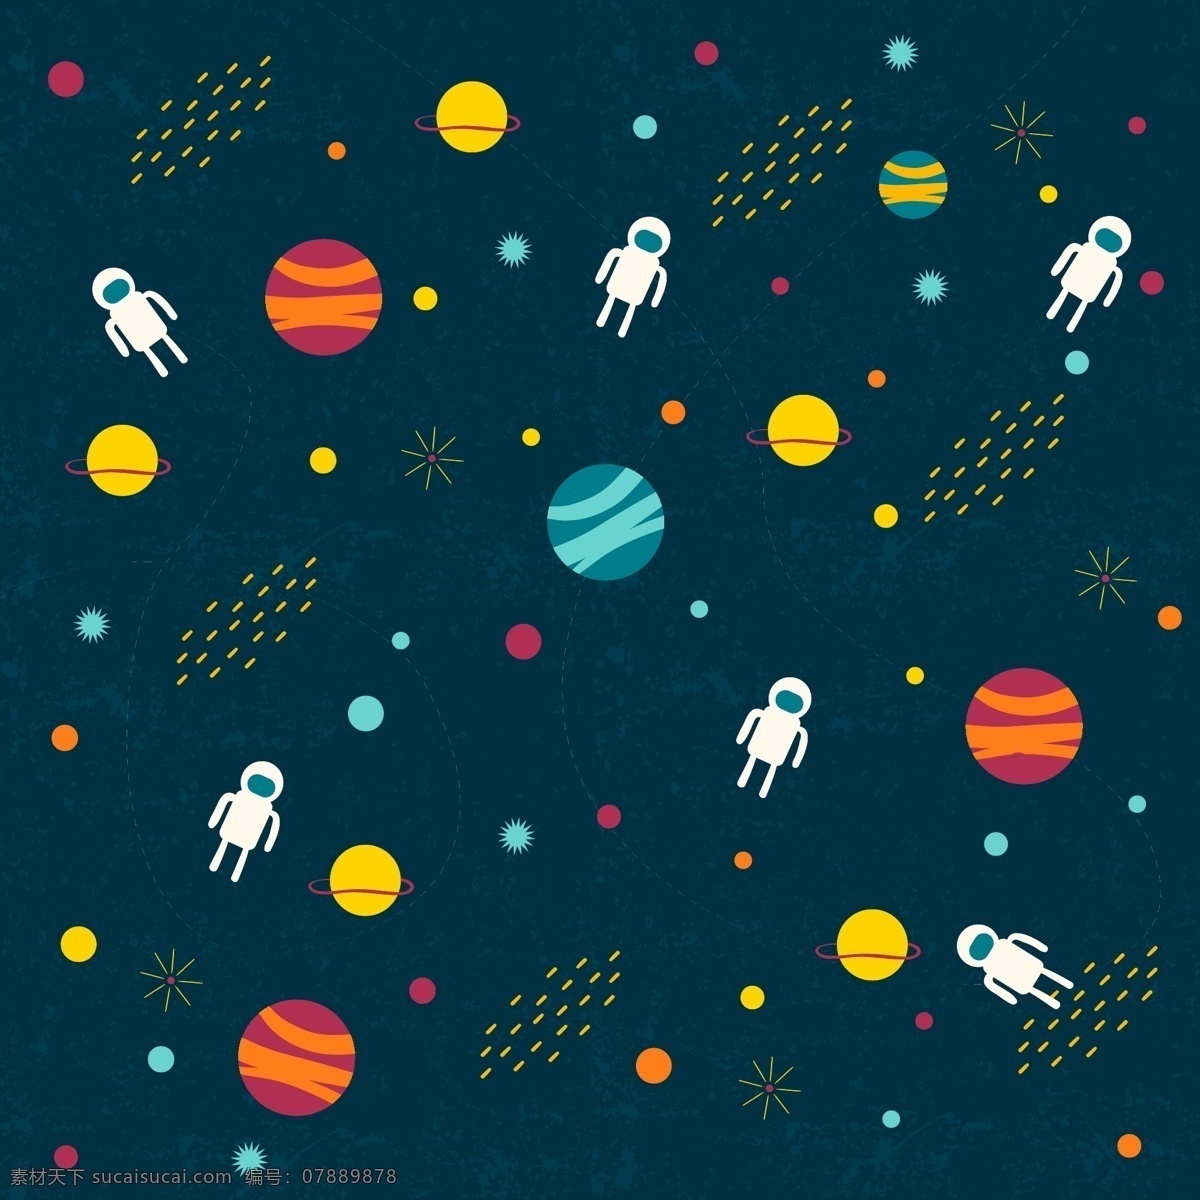 外 太空 插图 背景 行星 宇航员 宇宙 星系 外层空间 星际 卡通背景 星球背景 底纹边框 背景底纹